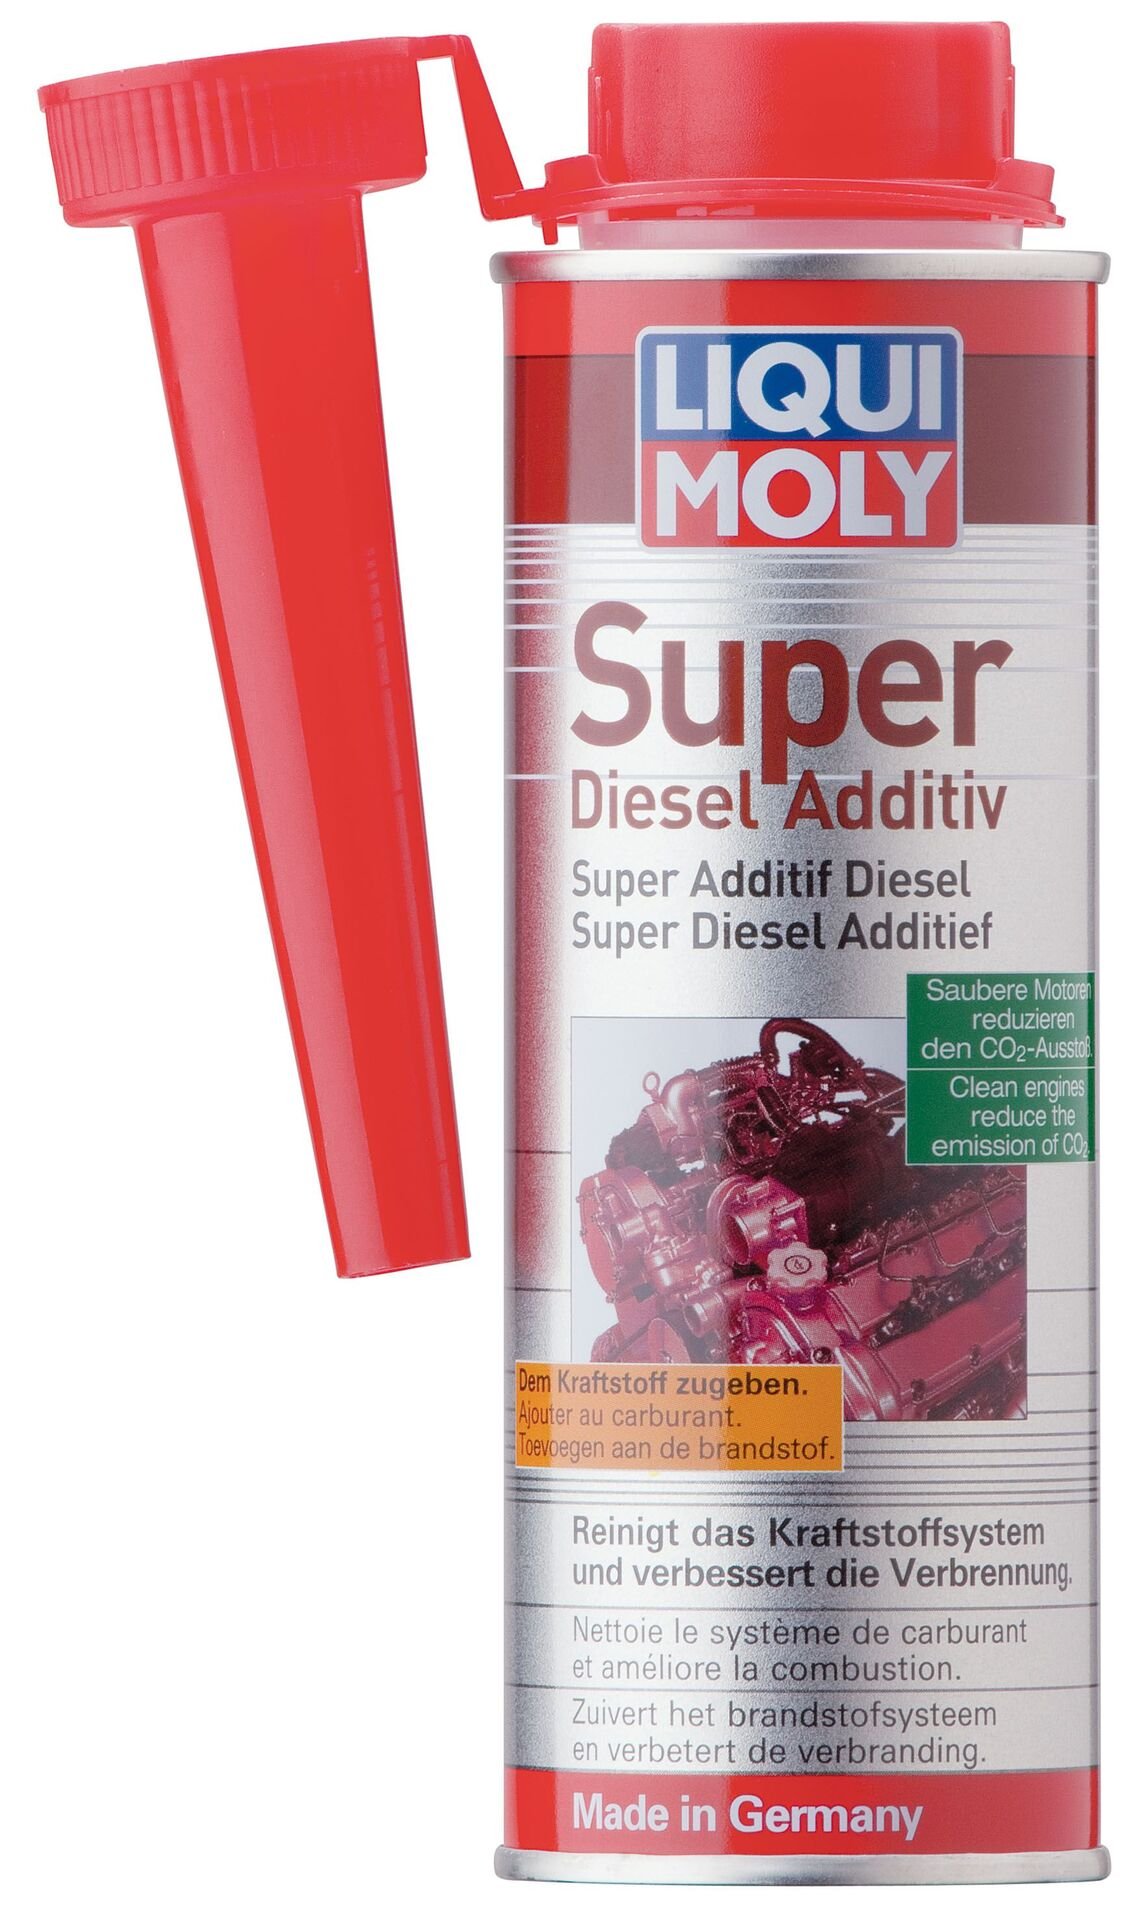 Super Diesel Additiv Liqui Moly 5120 12x 250ml Kraftstoff Reiniger Zusatz Schutz